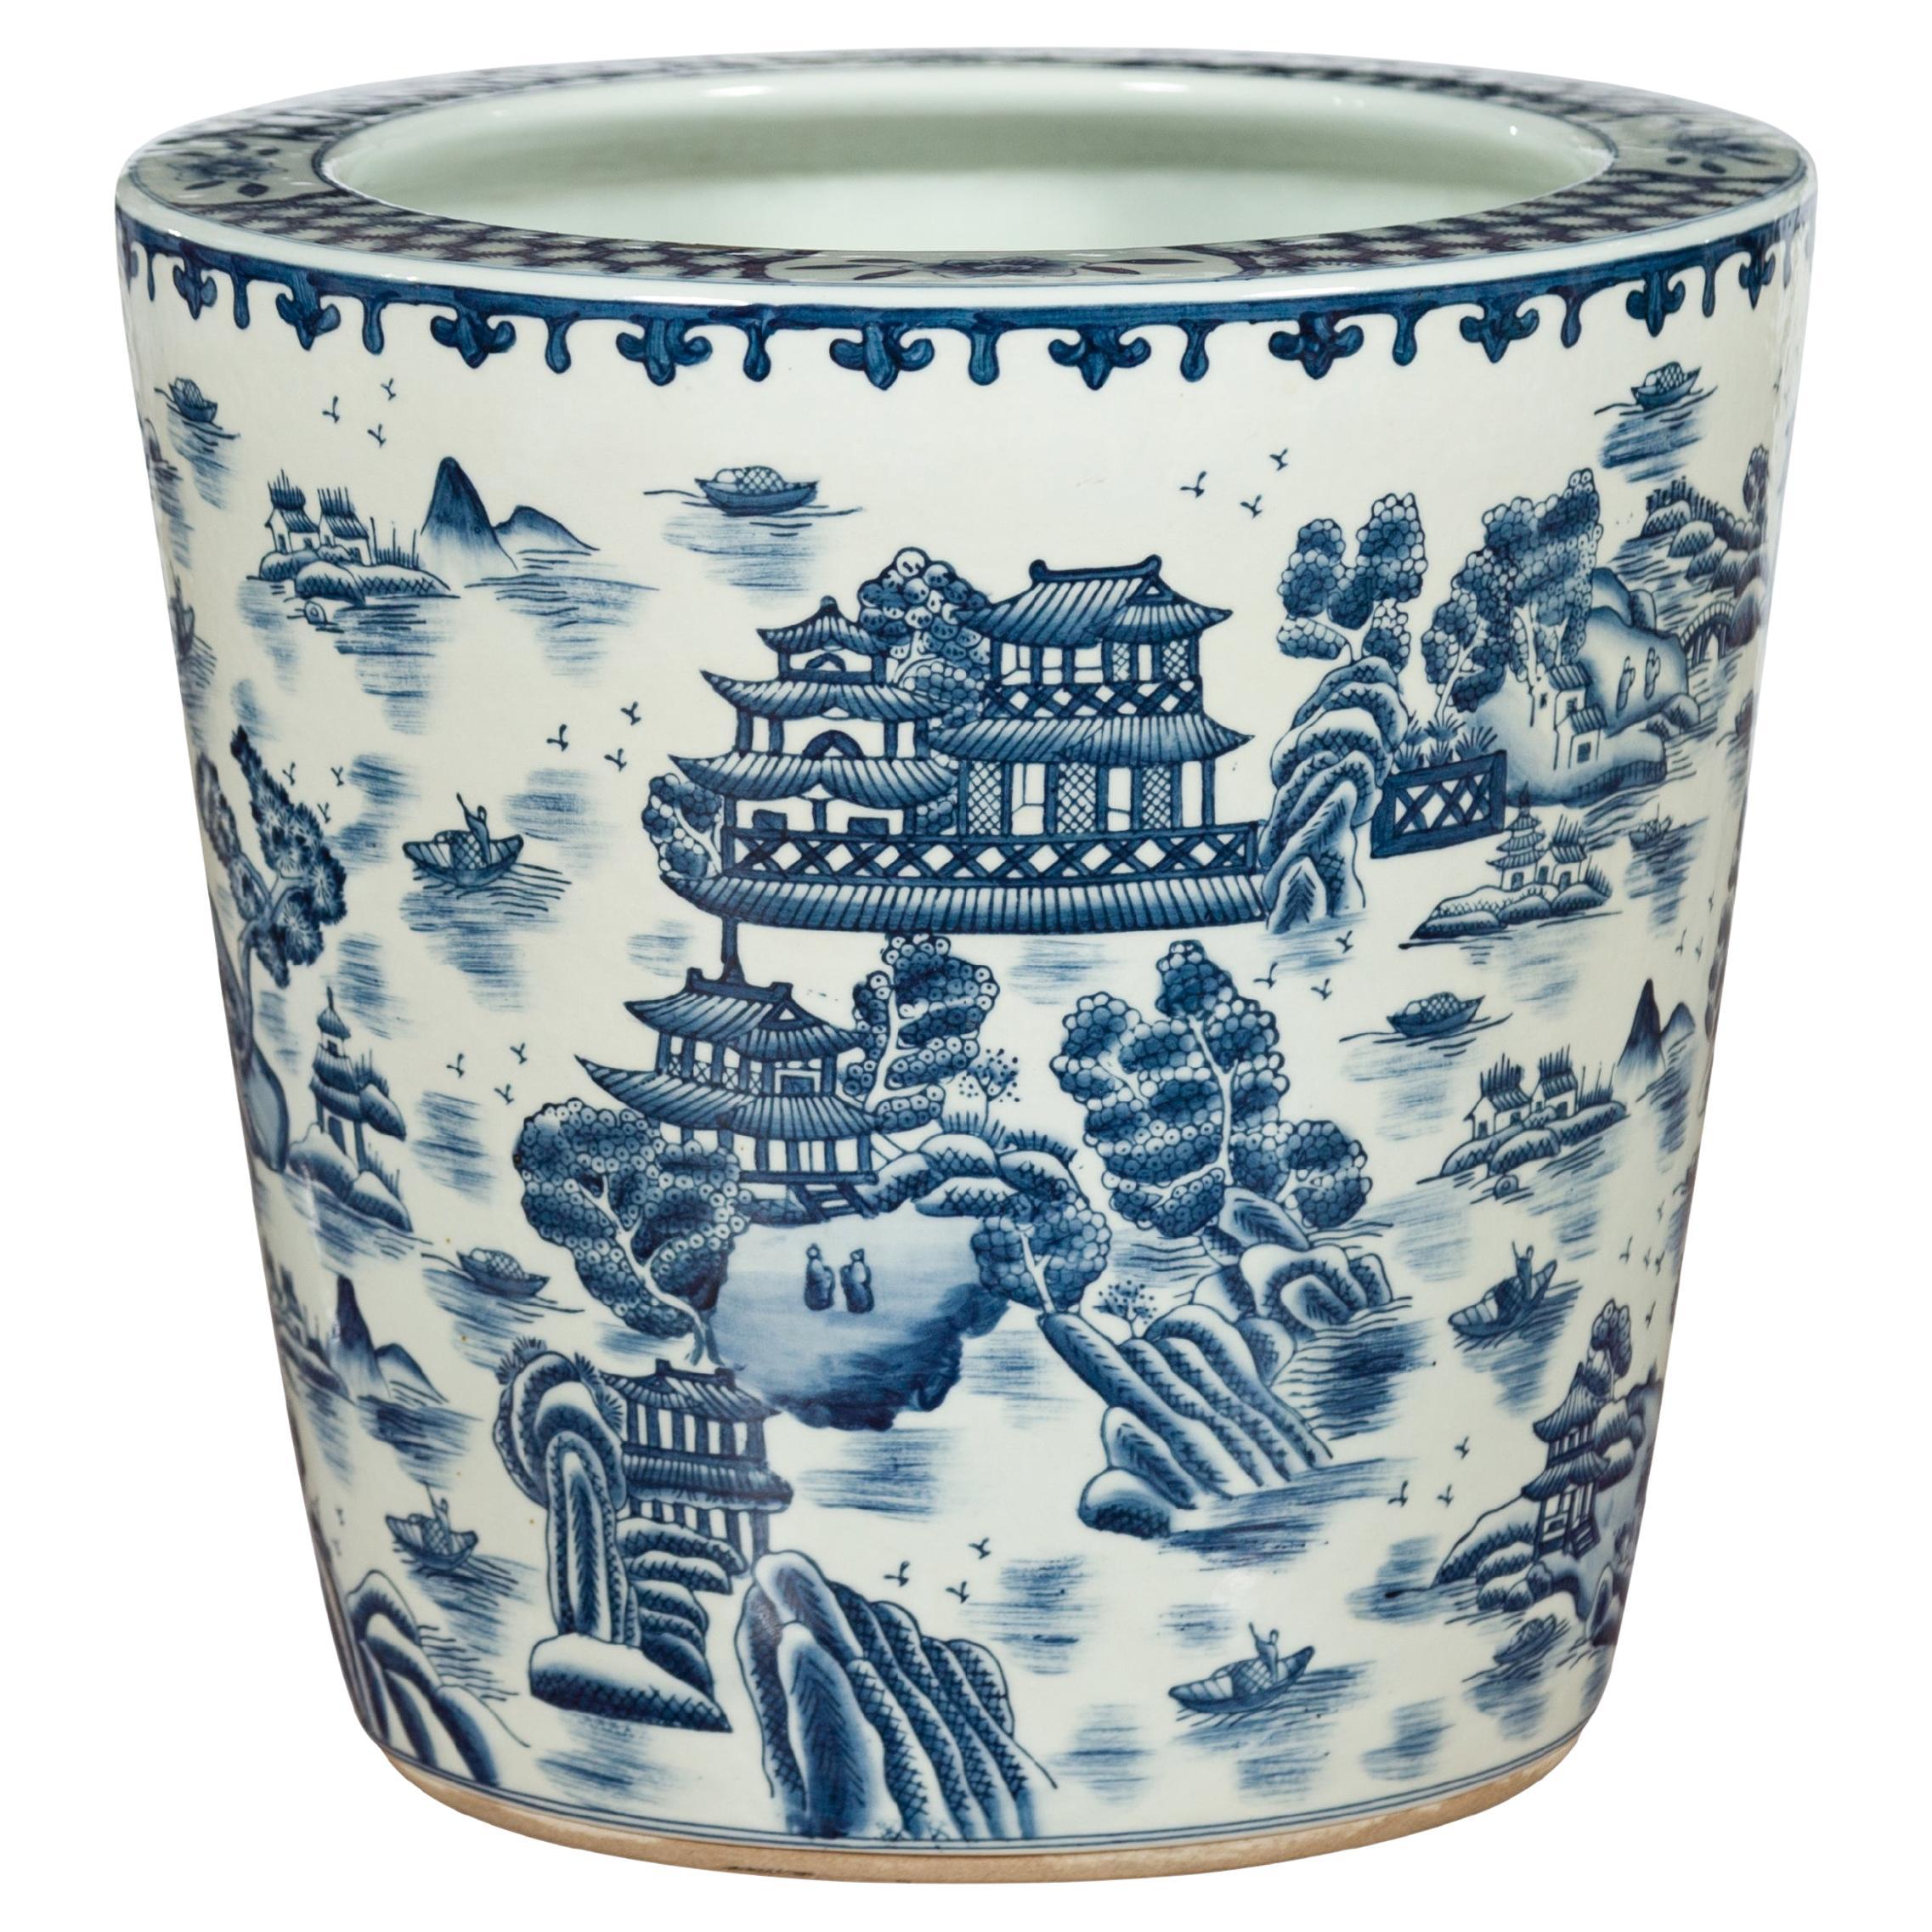 Chinesisches Vintage-Pflanzgefäß aus Porzellan mit blauer und weißer Landschaft